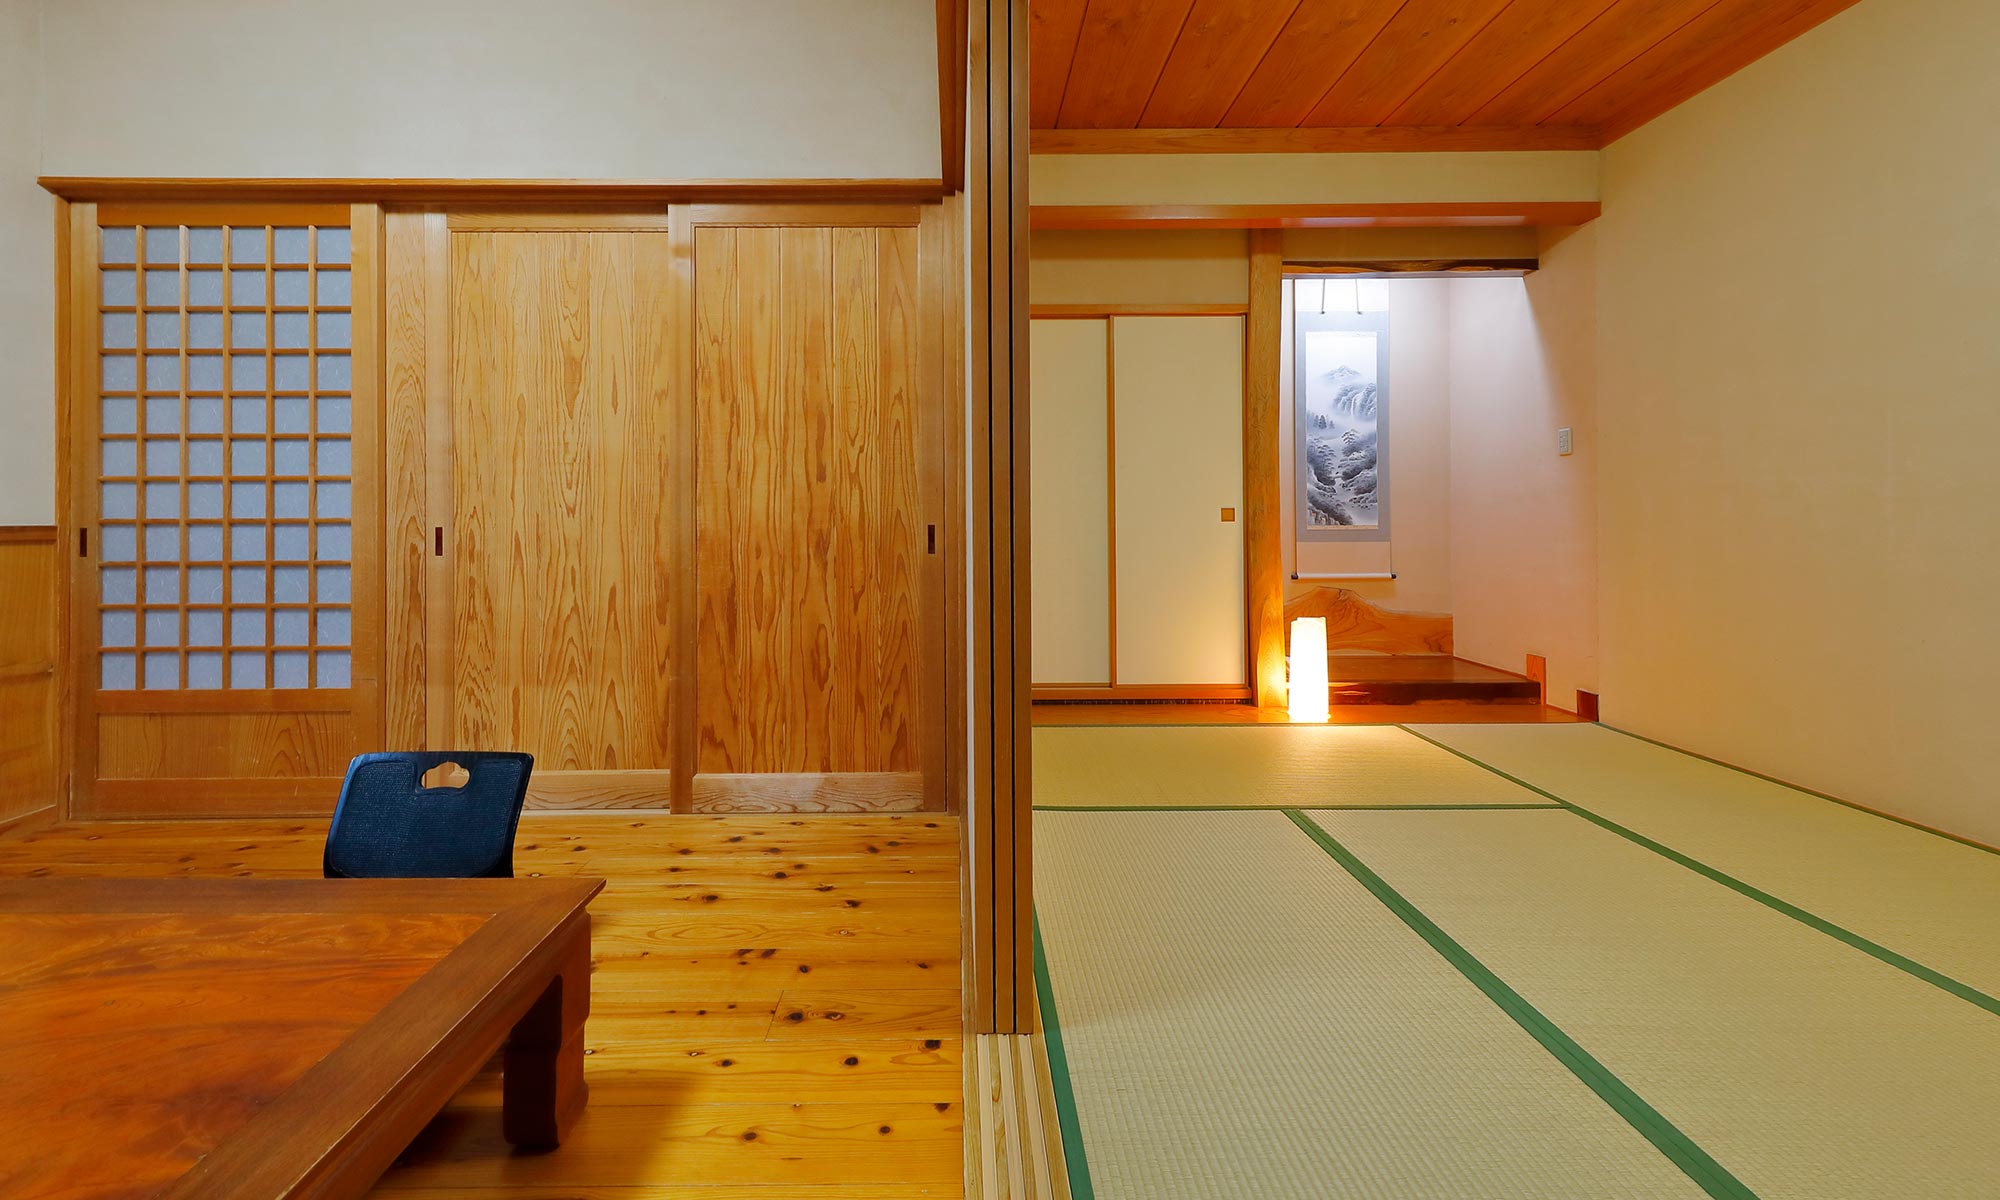 隔壁房間是4.5張榻榻米，日式房間是6張榻榻米。